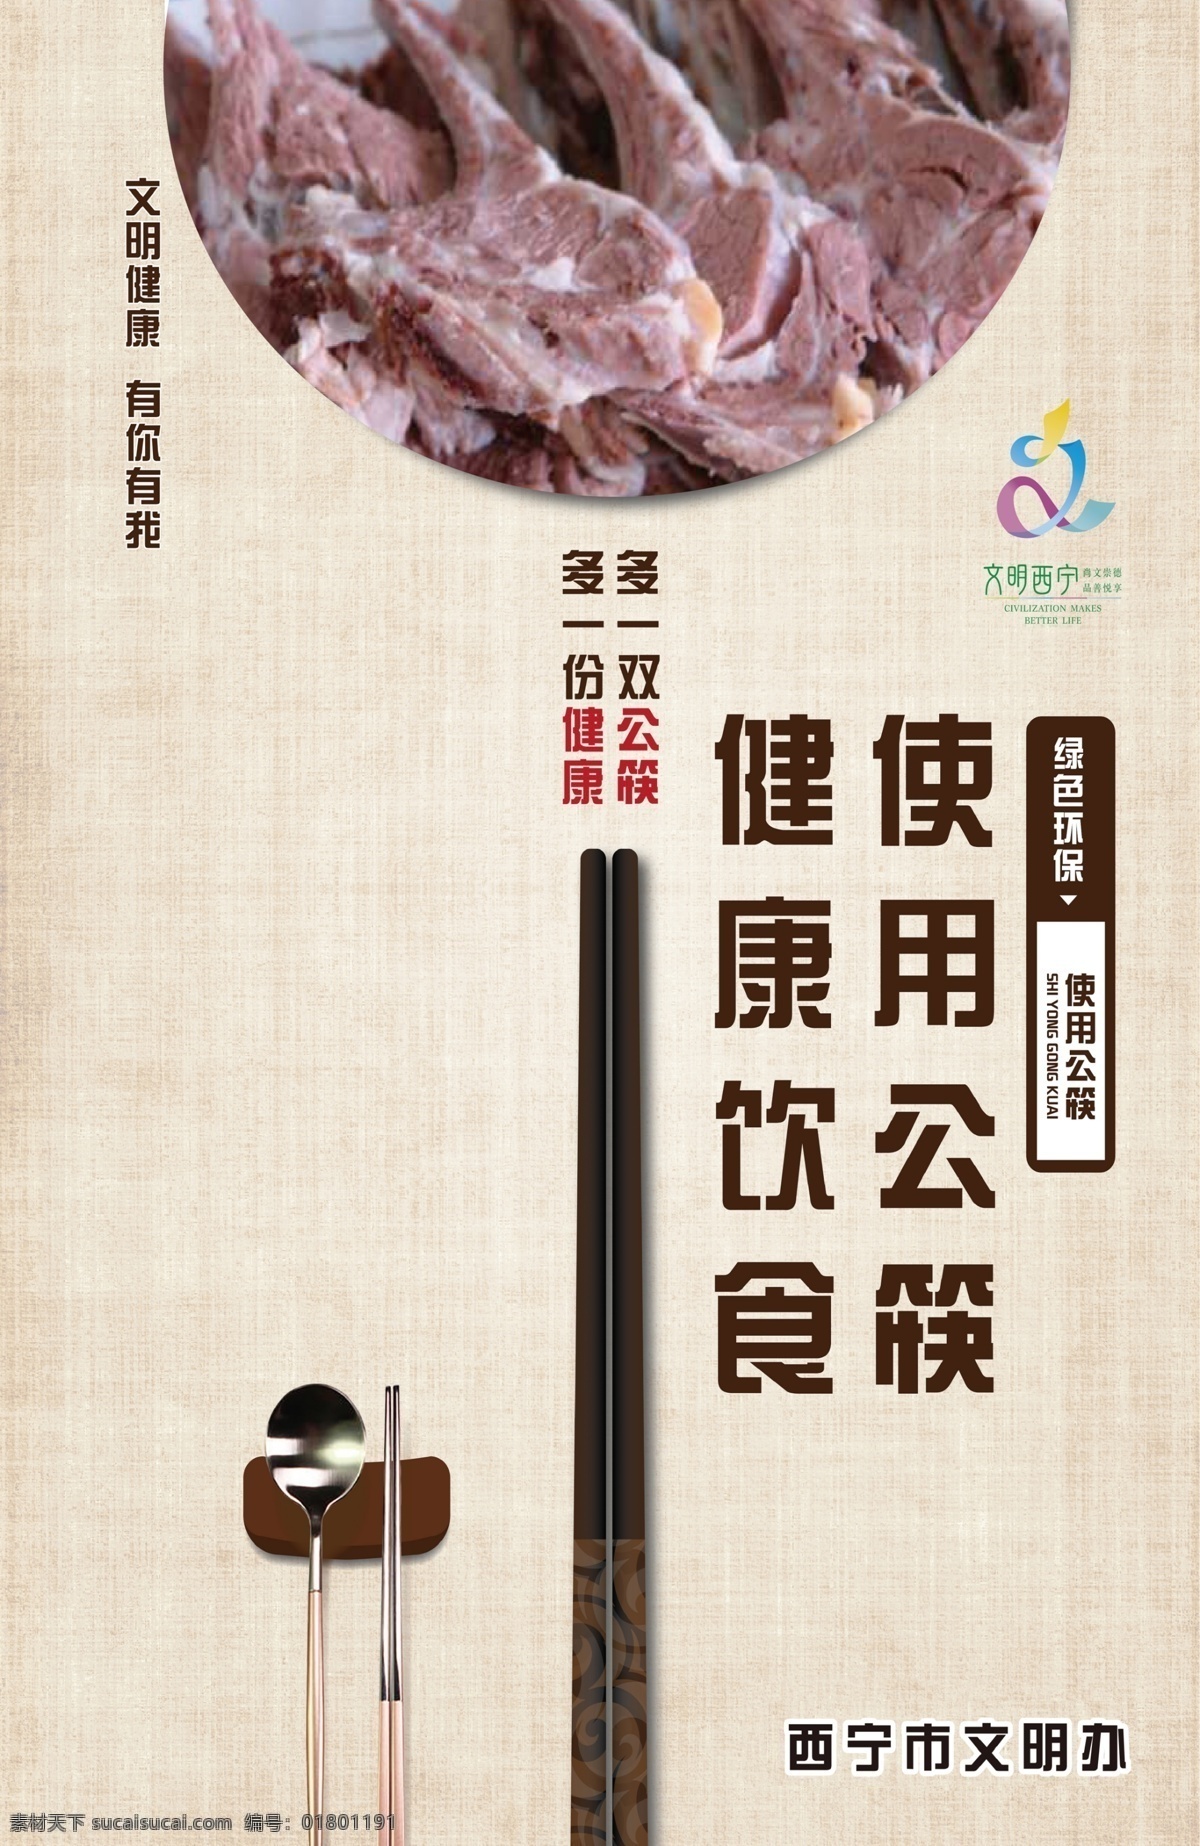 健康饮食 使用公筷 文明餐桌 文明西宁 海报